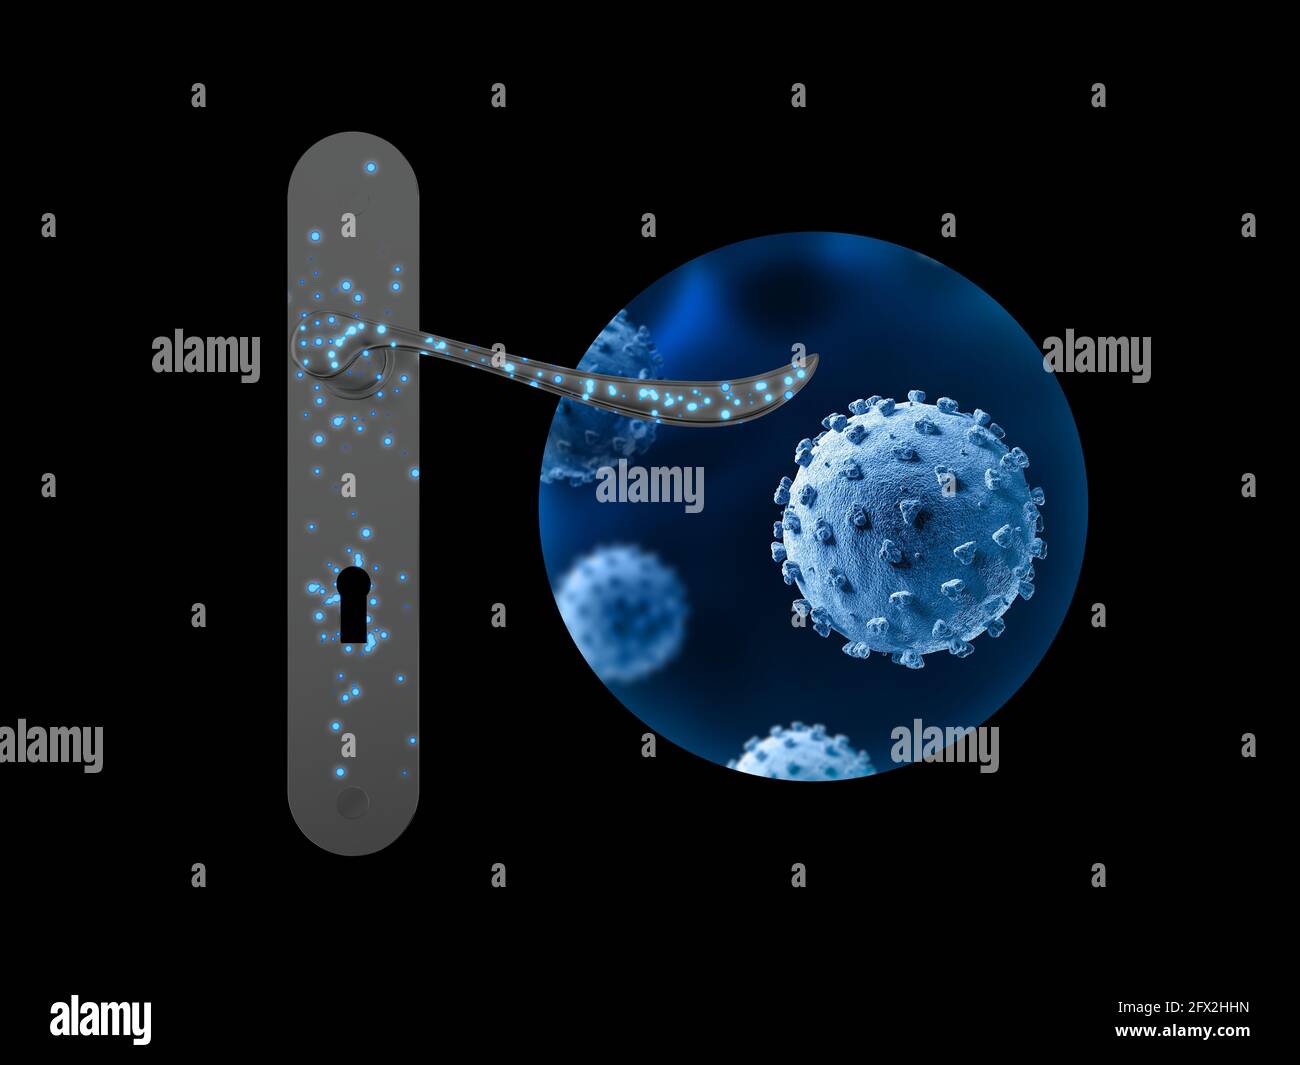 Door handle. Viruses spread from surface to human. 3d illustration. Covid-19. Coronavirus. Stock Photo